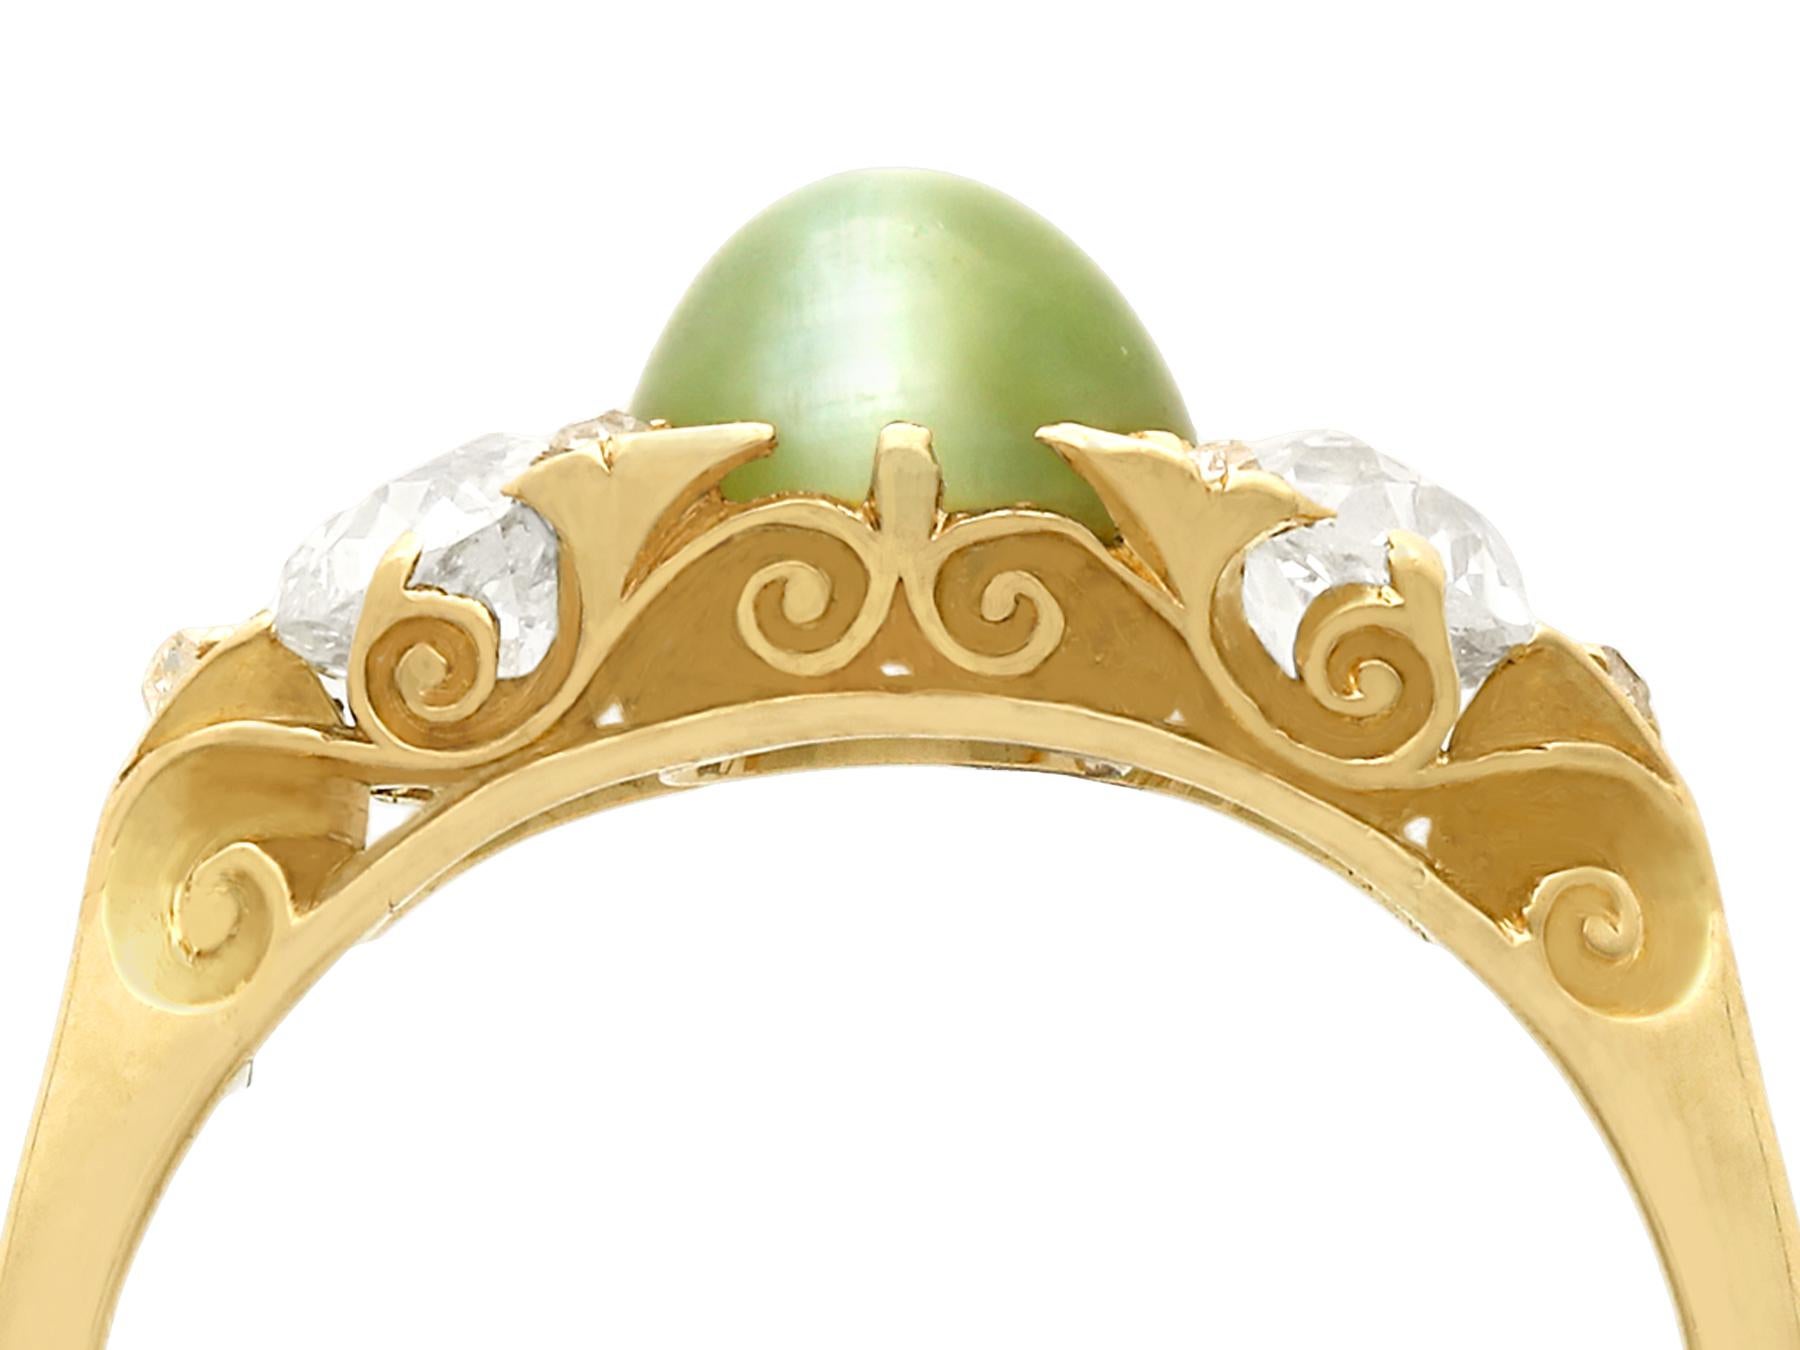 Eine beeindruckende antike viktorianische 1,35 Karat Chrysoberyll und 0,82 Karat Diamant, 18 Karat Gelbgold Kleid Ring; Teil unserer vielfältigen antiken Schmuck und Estate Jewelry Collections.

Dieser feine und beeindruckende antike Ring ist aus 18